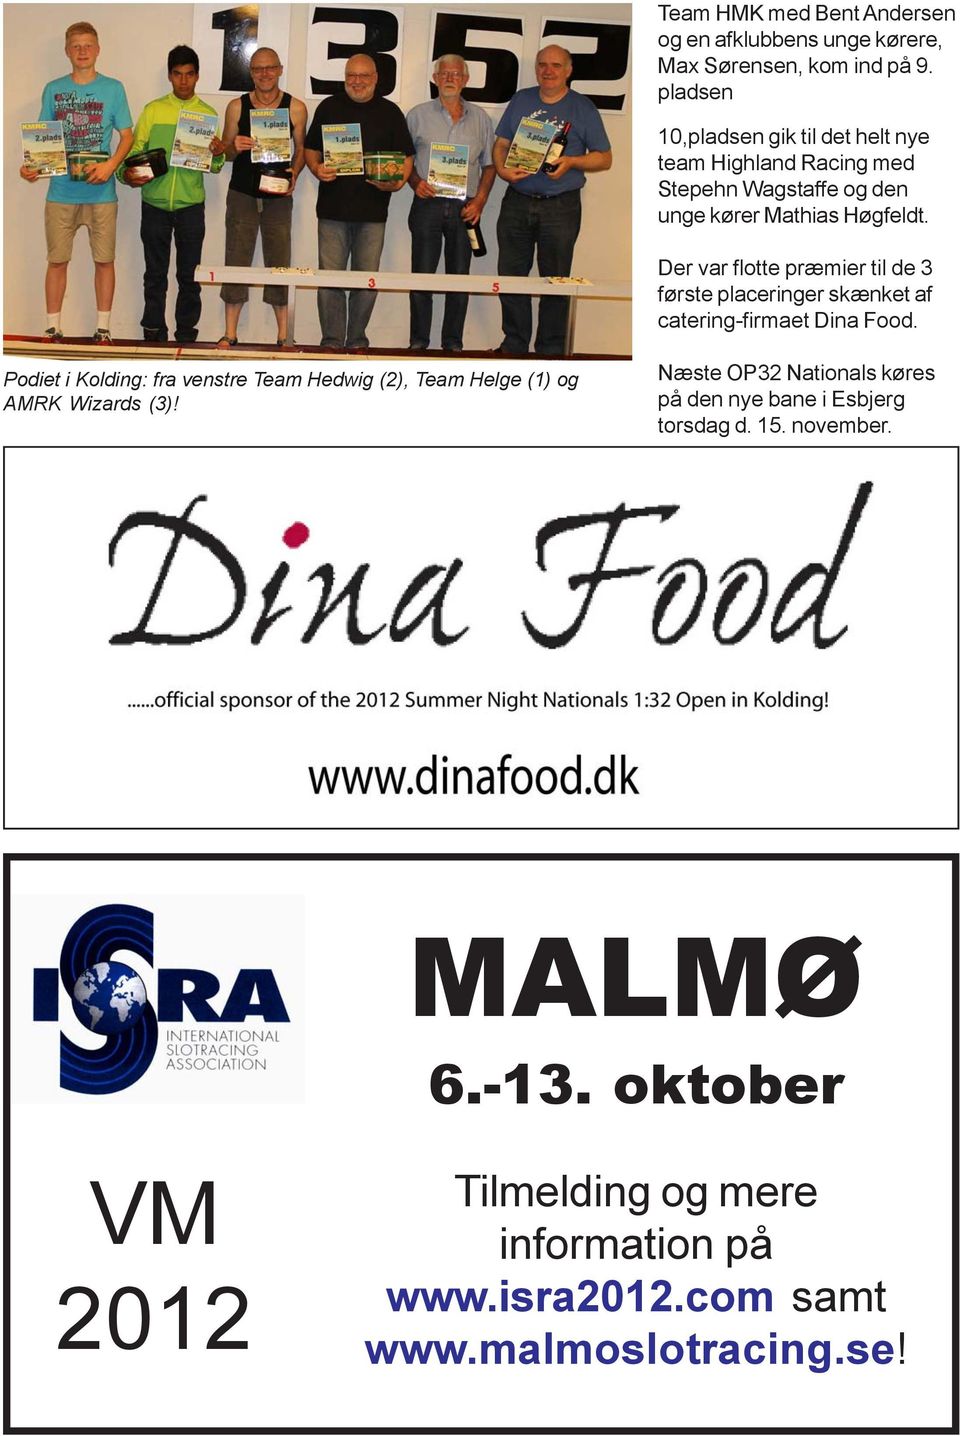 Der var flotte præmier til de 3 første placeringer skænket af catering-firmaet Dina Food.